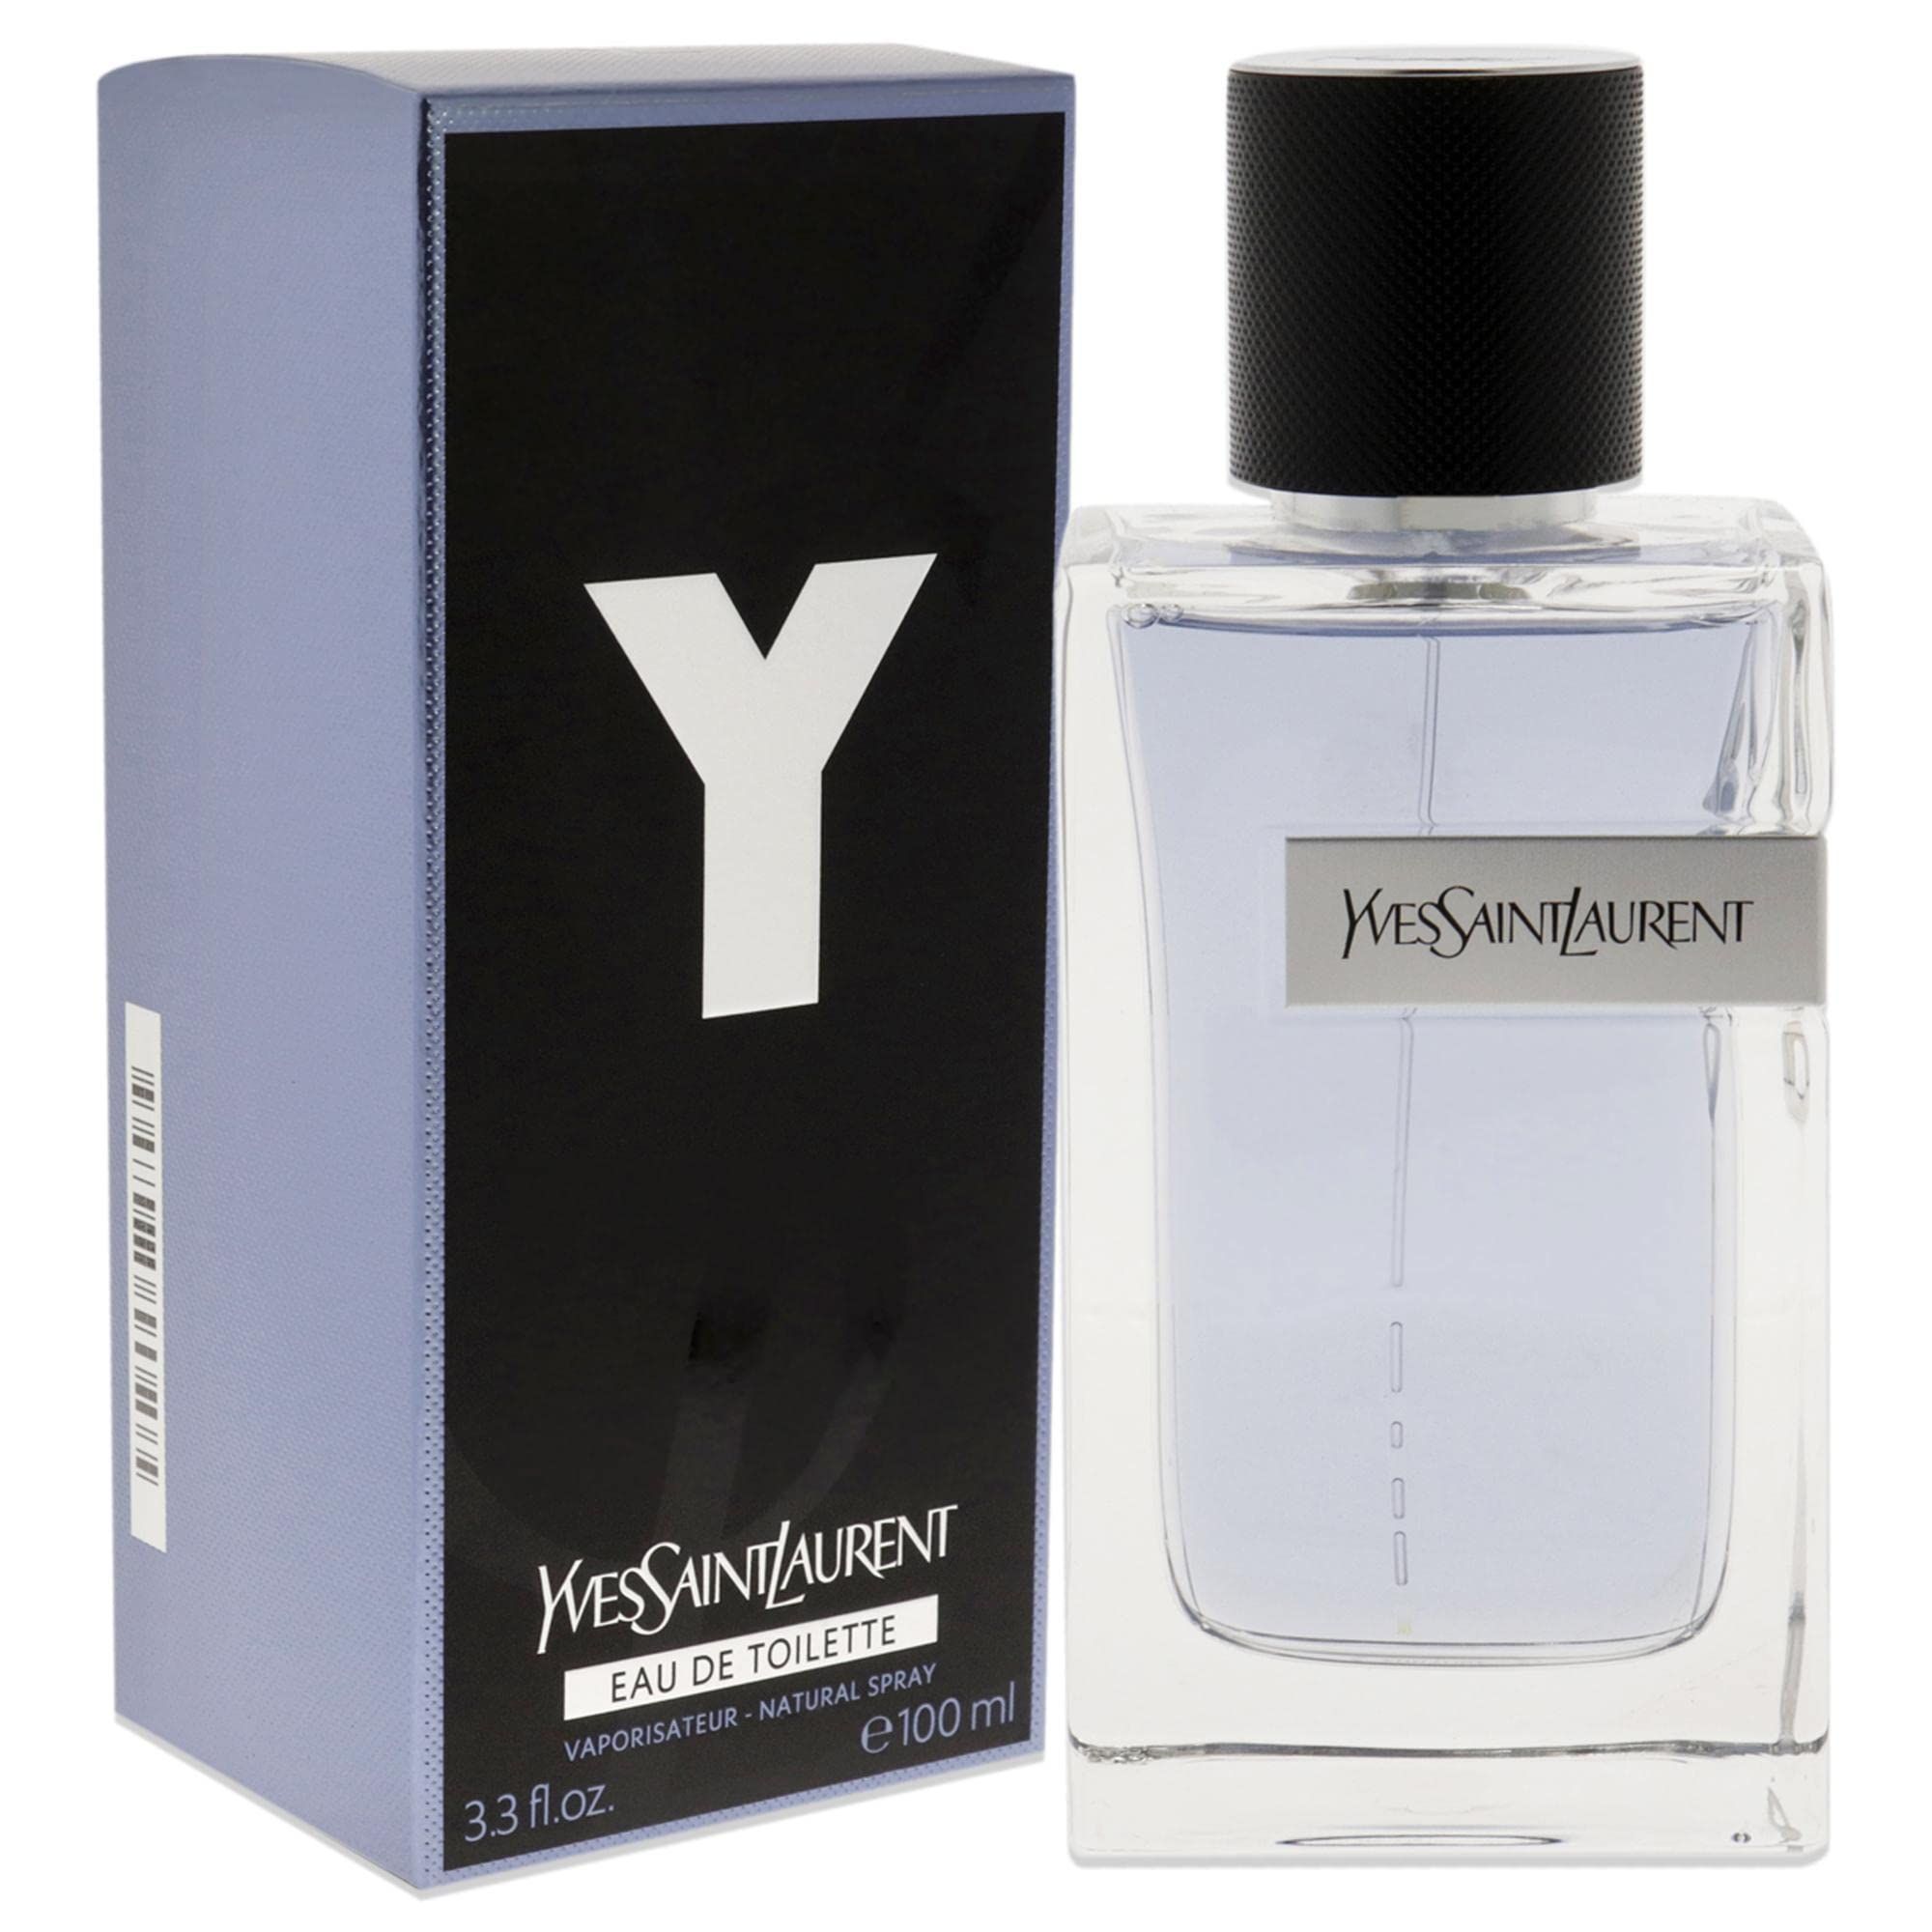 Y by Yves Saint Laurent - perfume for men - Eau de Toilette, 100ML